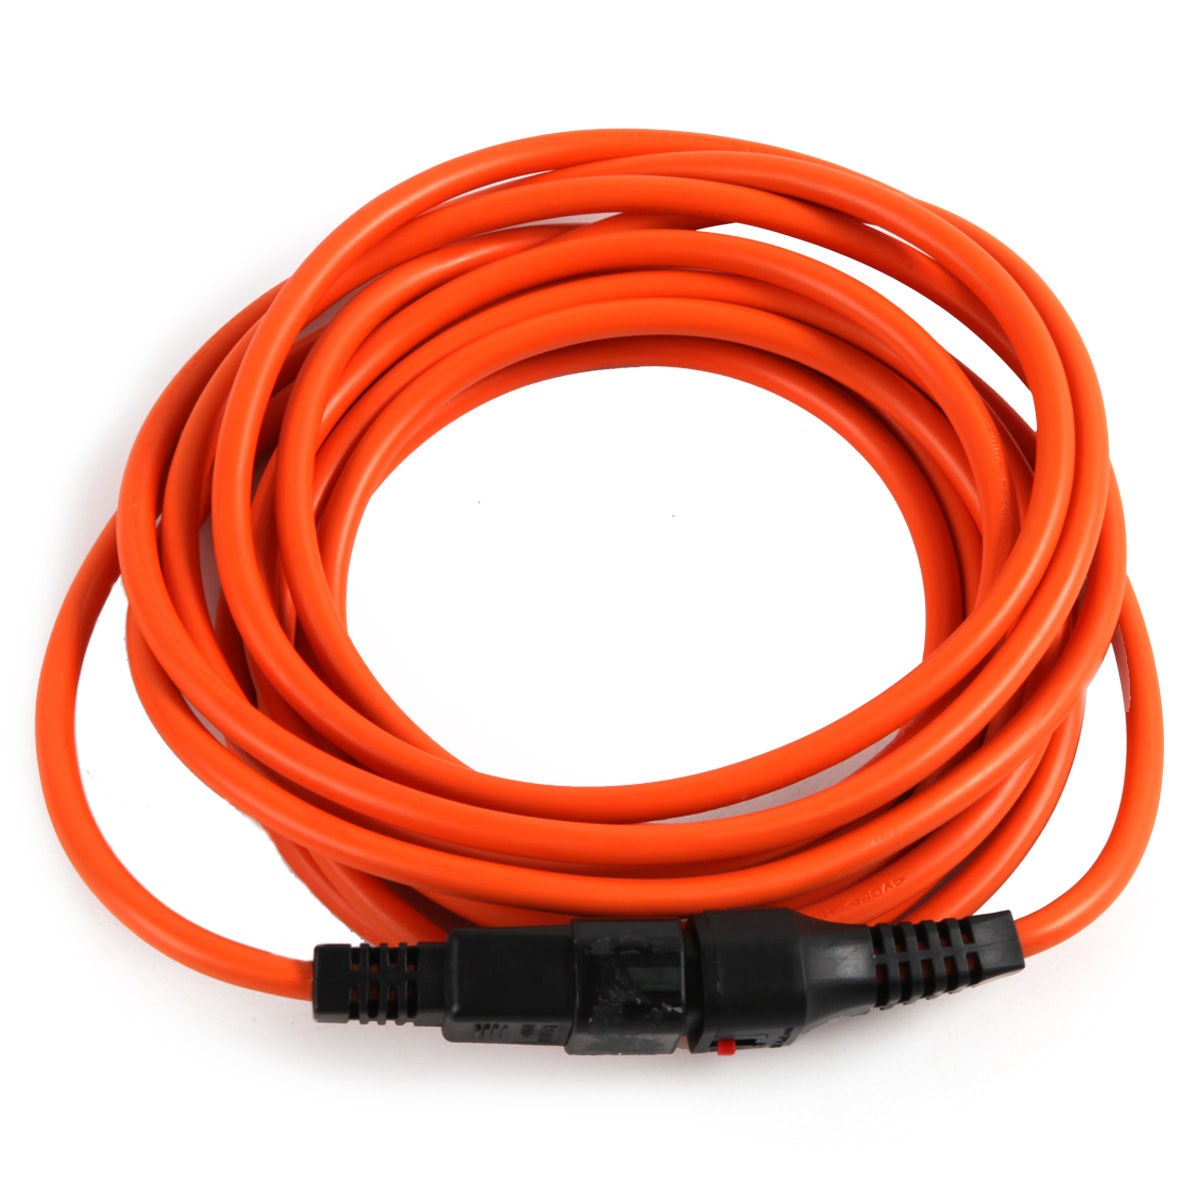 5 Metre Orange IEC Light Extension Cable 10 Amp
